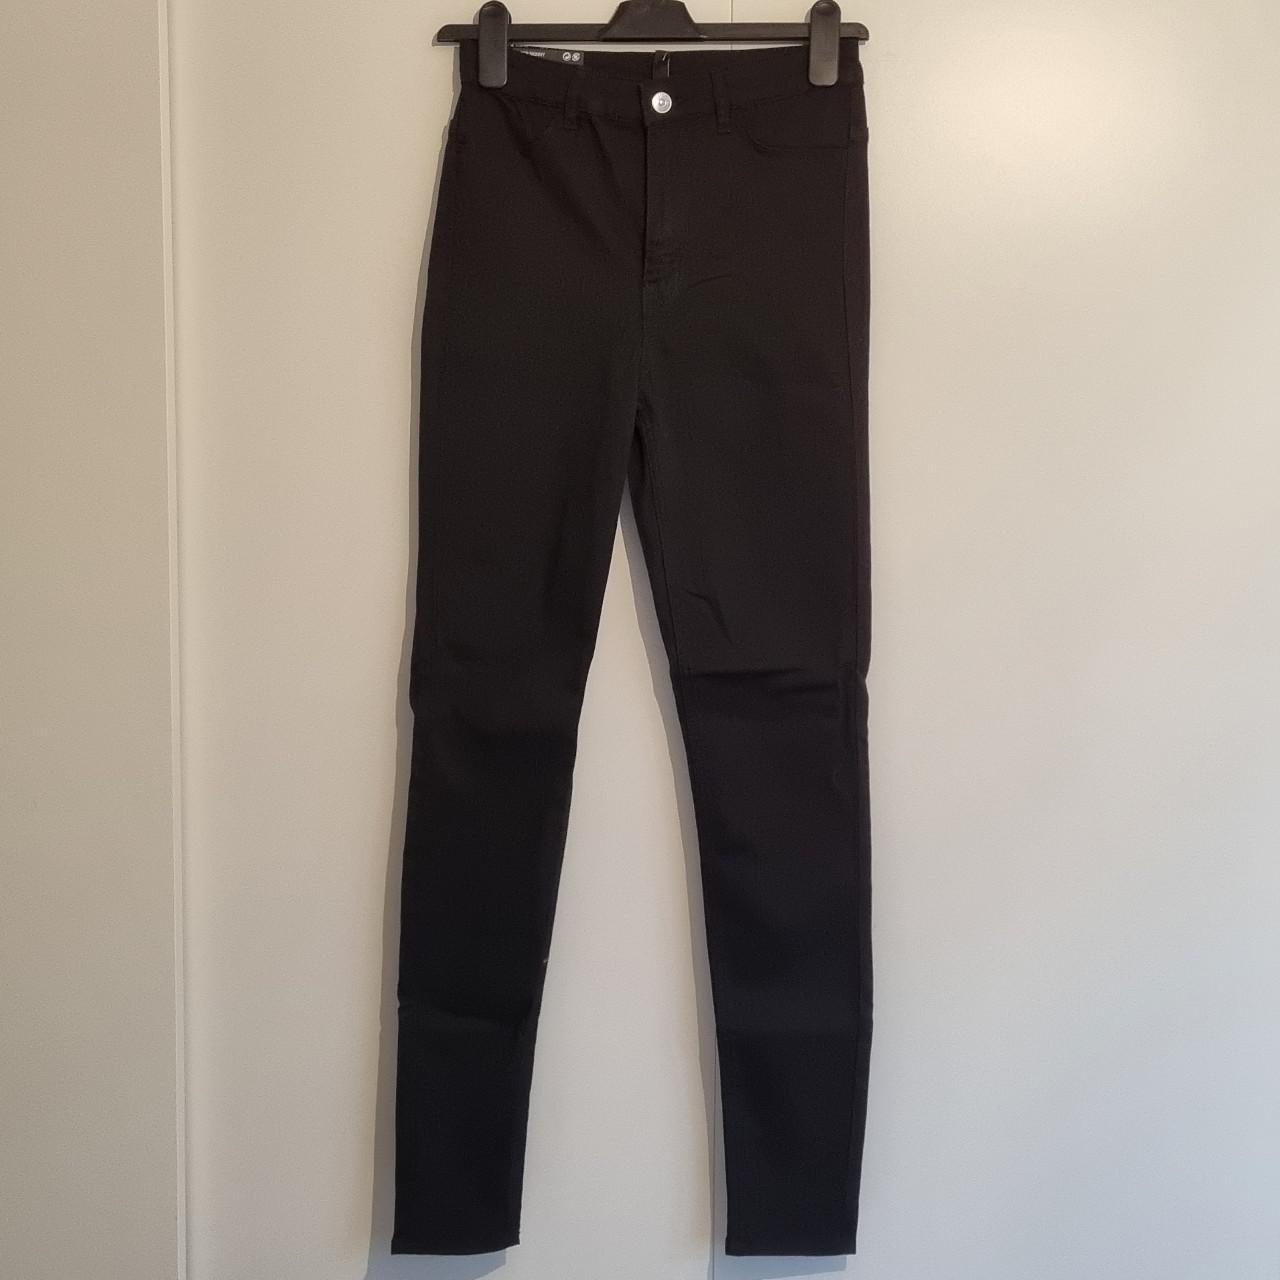 H&M Divided super skinny high waist black jeans... - Depop